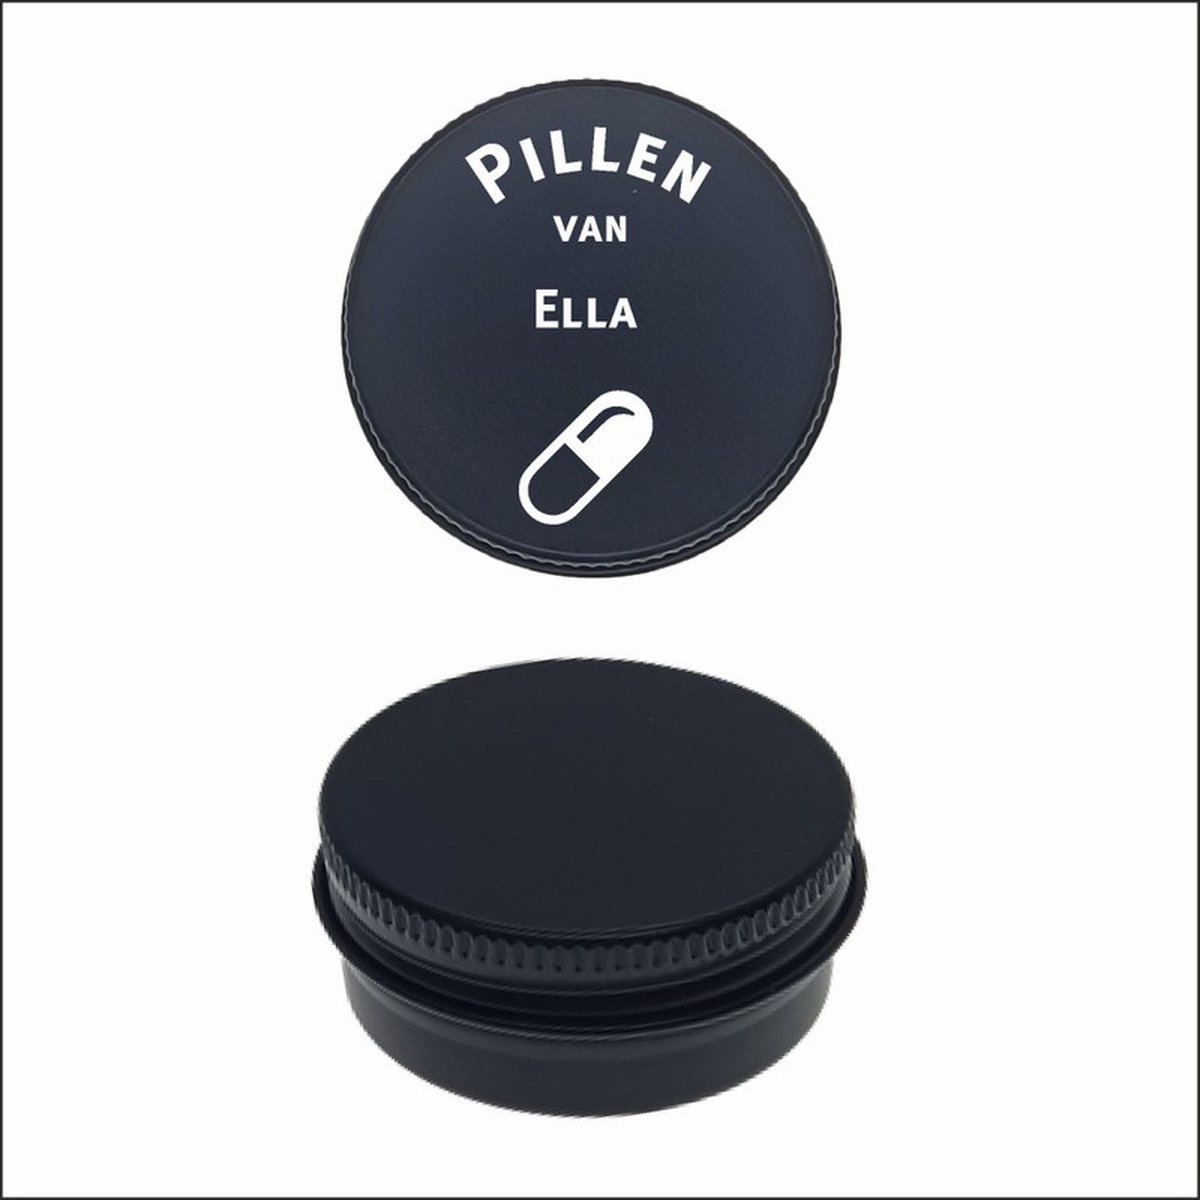 Pillen Blikje Met Naam Gravering - Ella